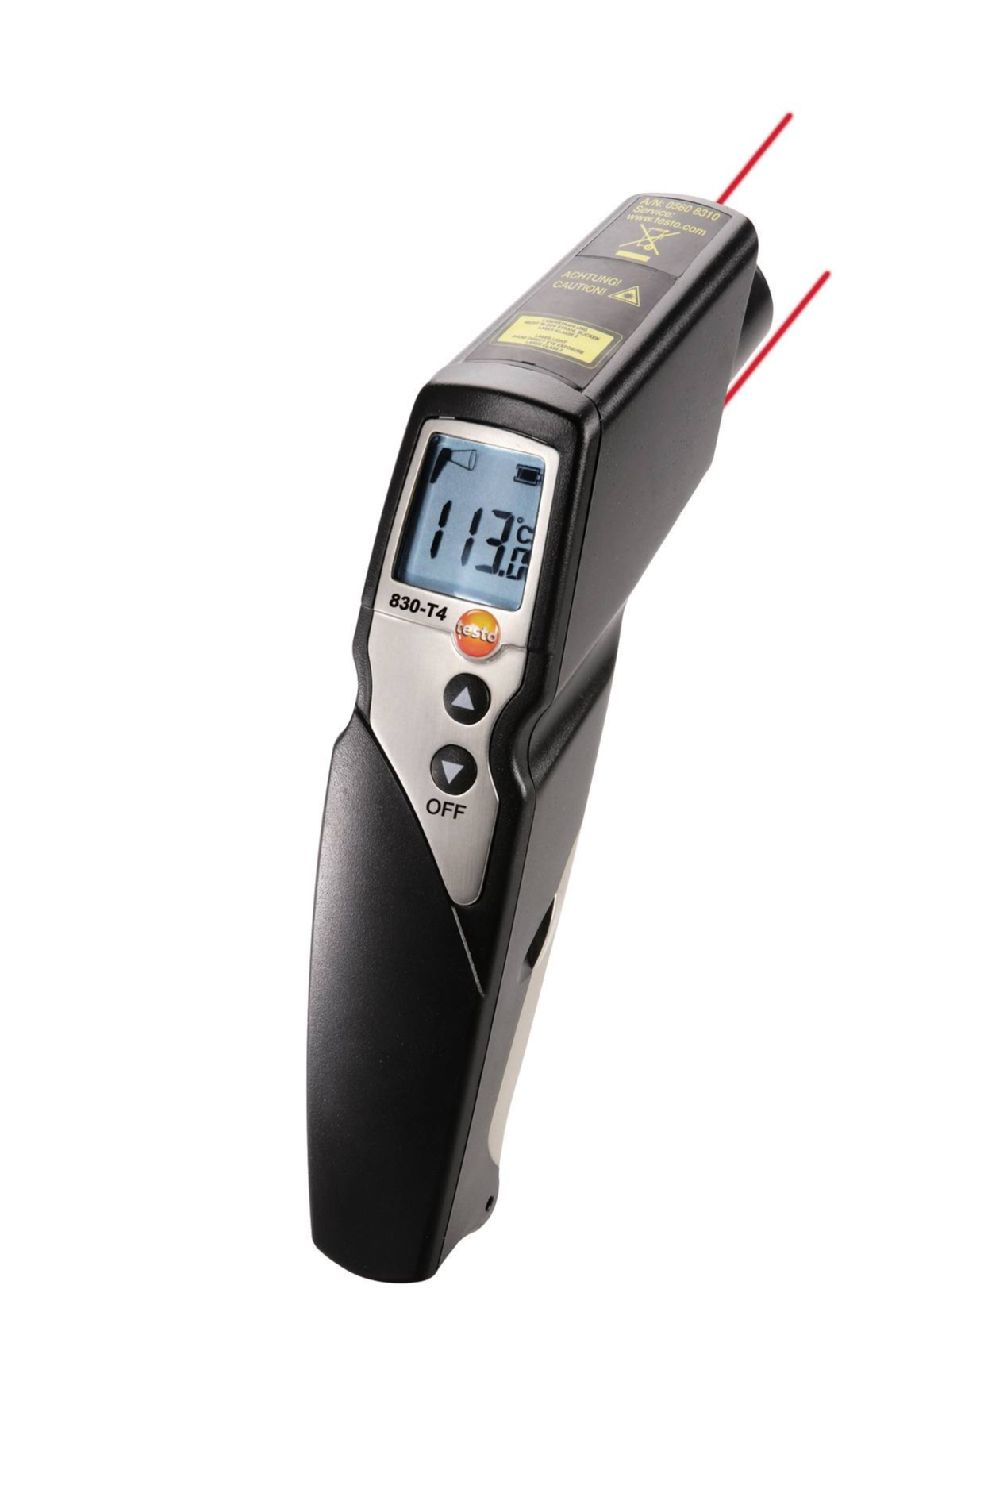 Testo 830-T4 — инфракрасный термометр с 2-х точечным лазерным целеуказателем (оптика 30:1)